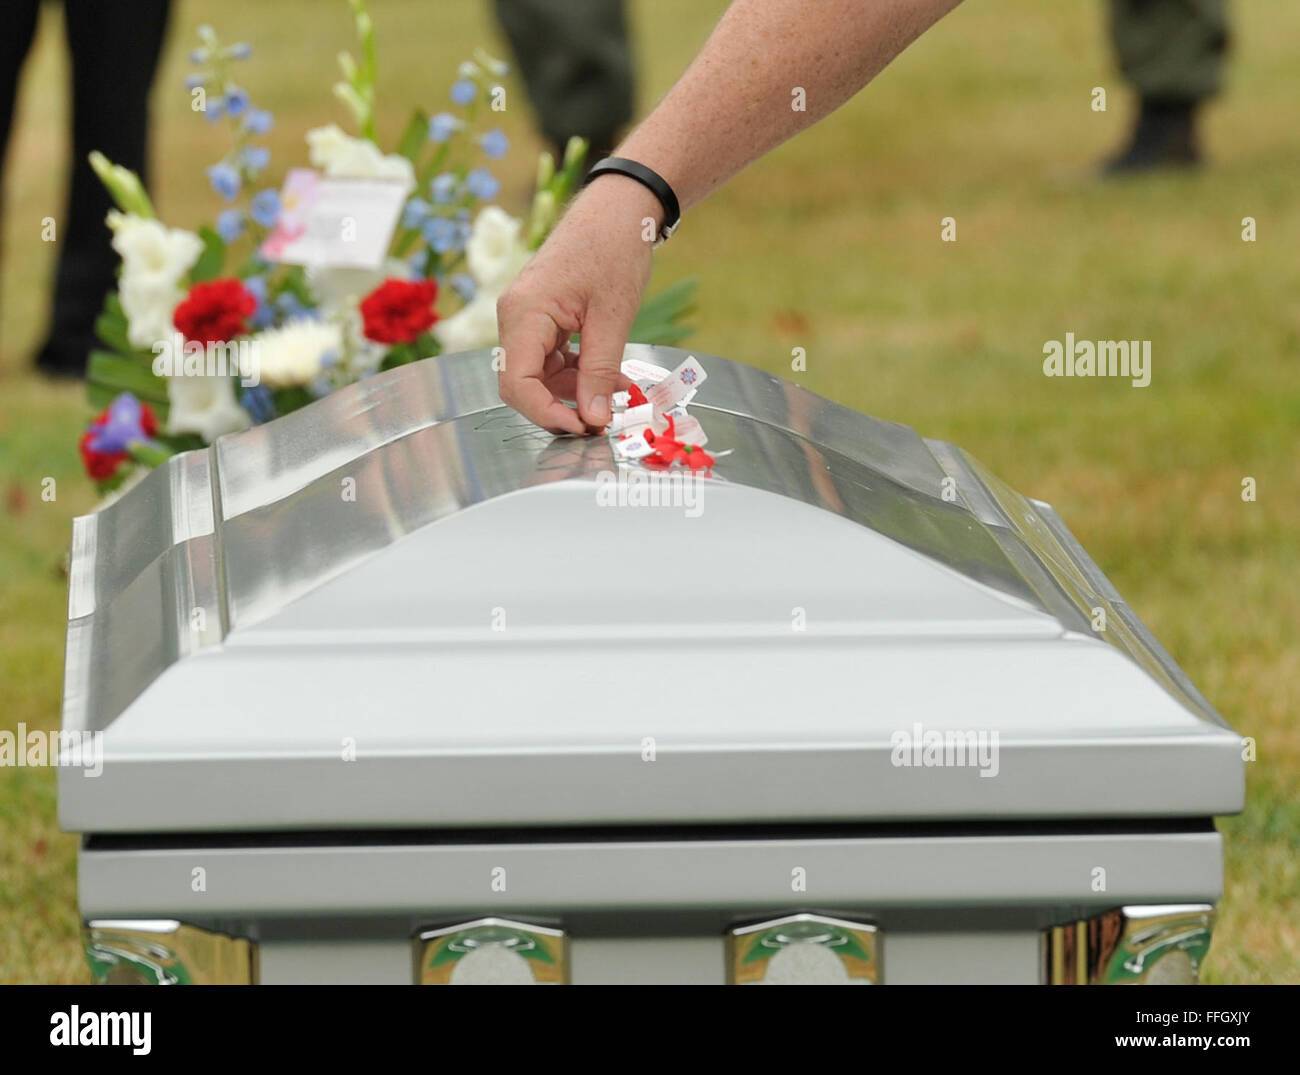 Un membre de la famille dépose une fleur sur le cercueil contenant les restes de six aviateurs tués dans un accident d'avion au Laos le 24 décembre, 1965. Leurs restes ont été récemment retrouvé et identifié. Un service funèbre a eu lieu le 9 juillet 2012, au cimetière national d'Arlington, Va. Banque D'Images